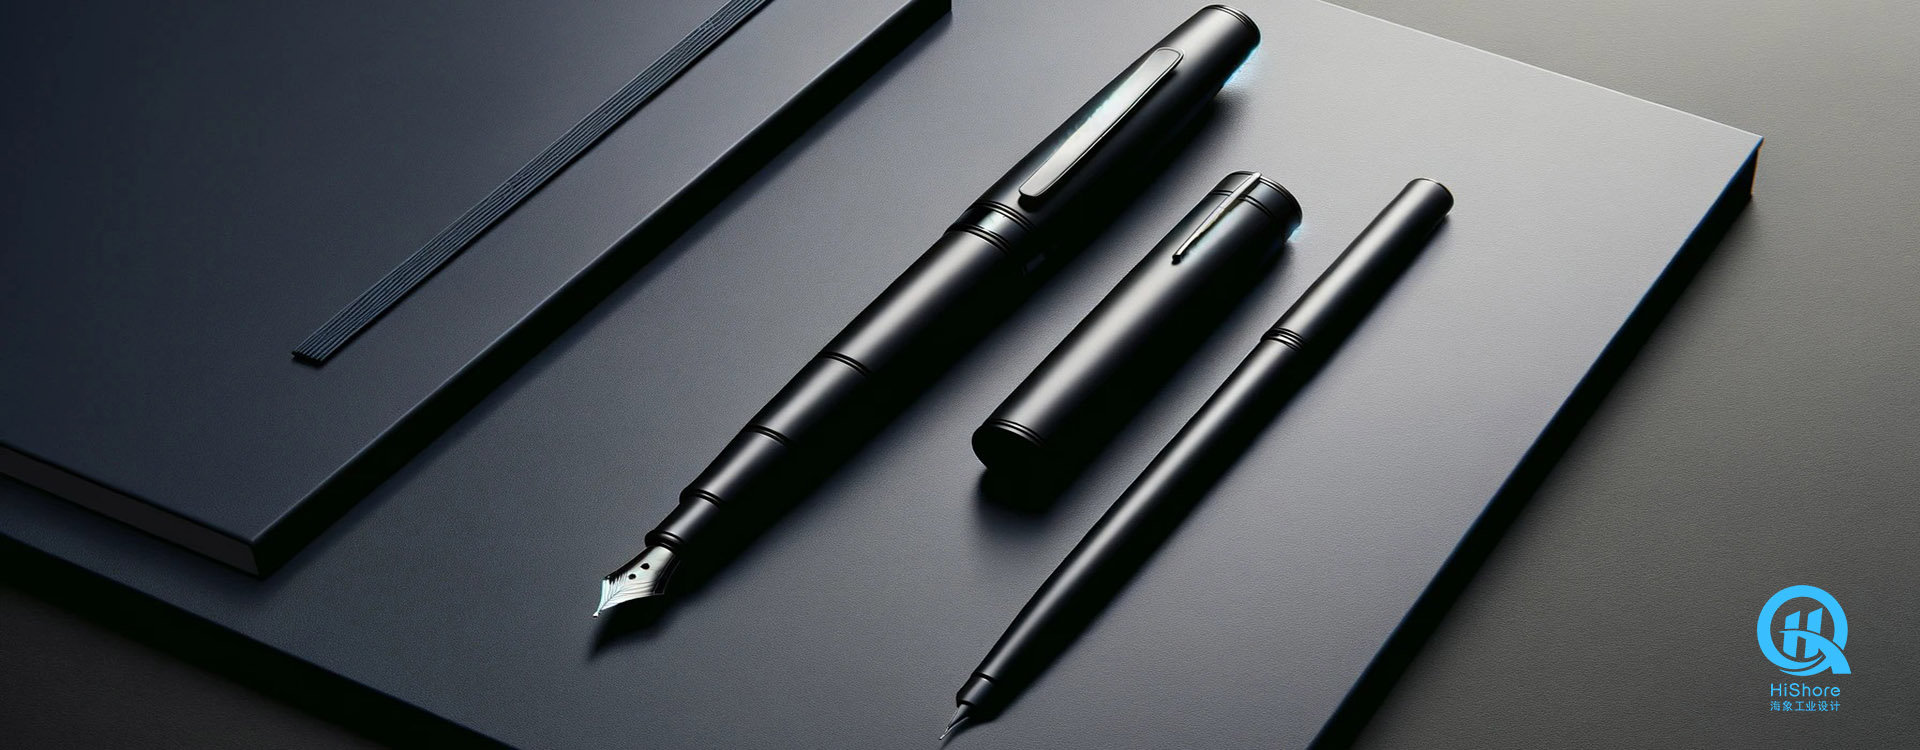 文具工业设计/钢笔外观设计/中性笔产品设计